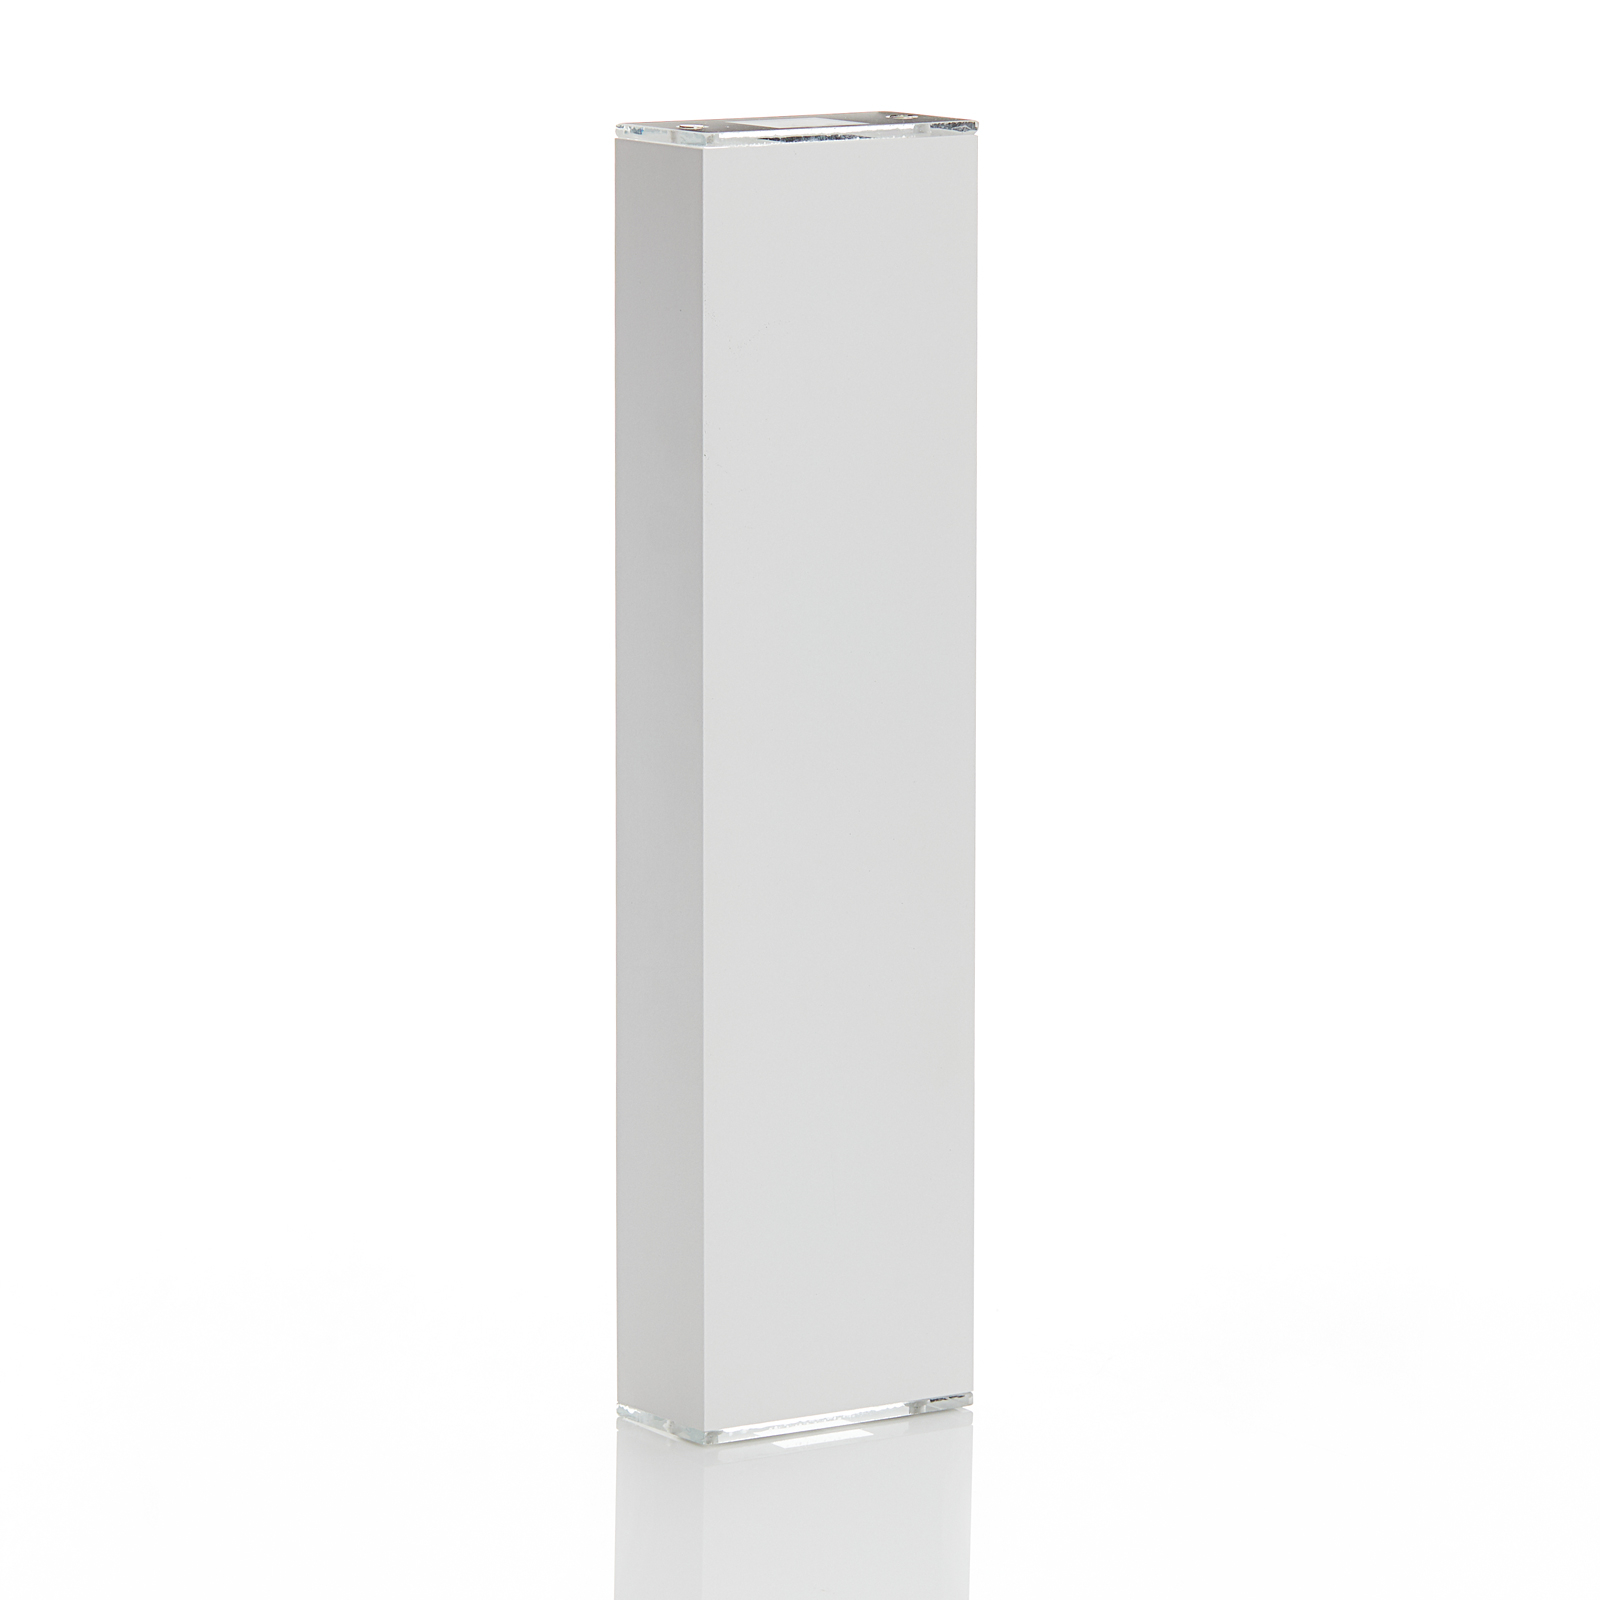 Lucande Anita LED-væglampe, hvid, højde 36 cm